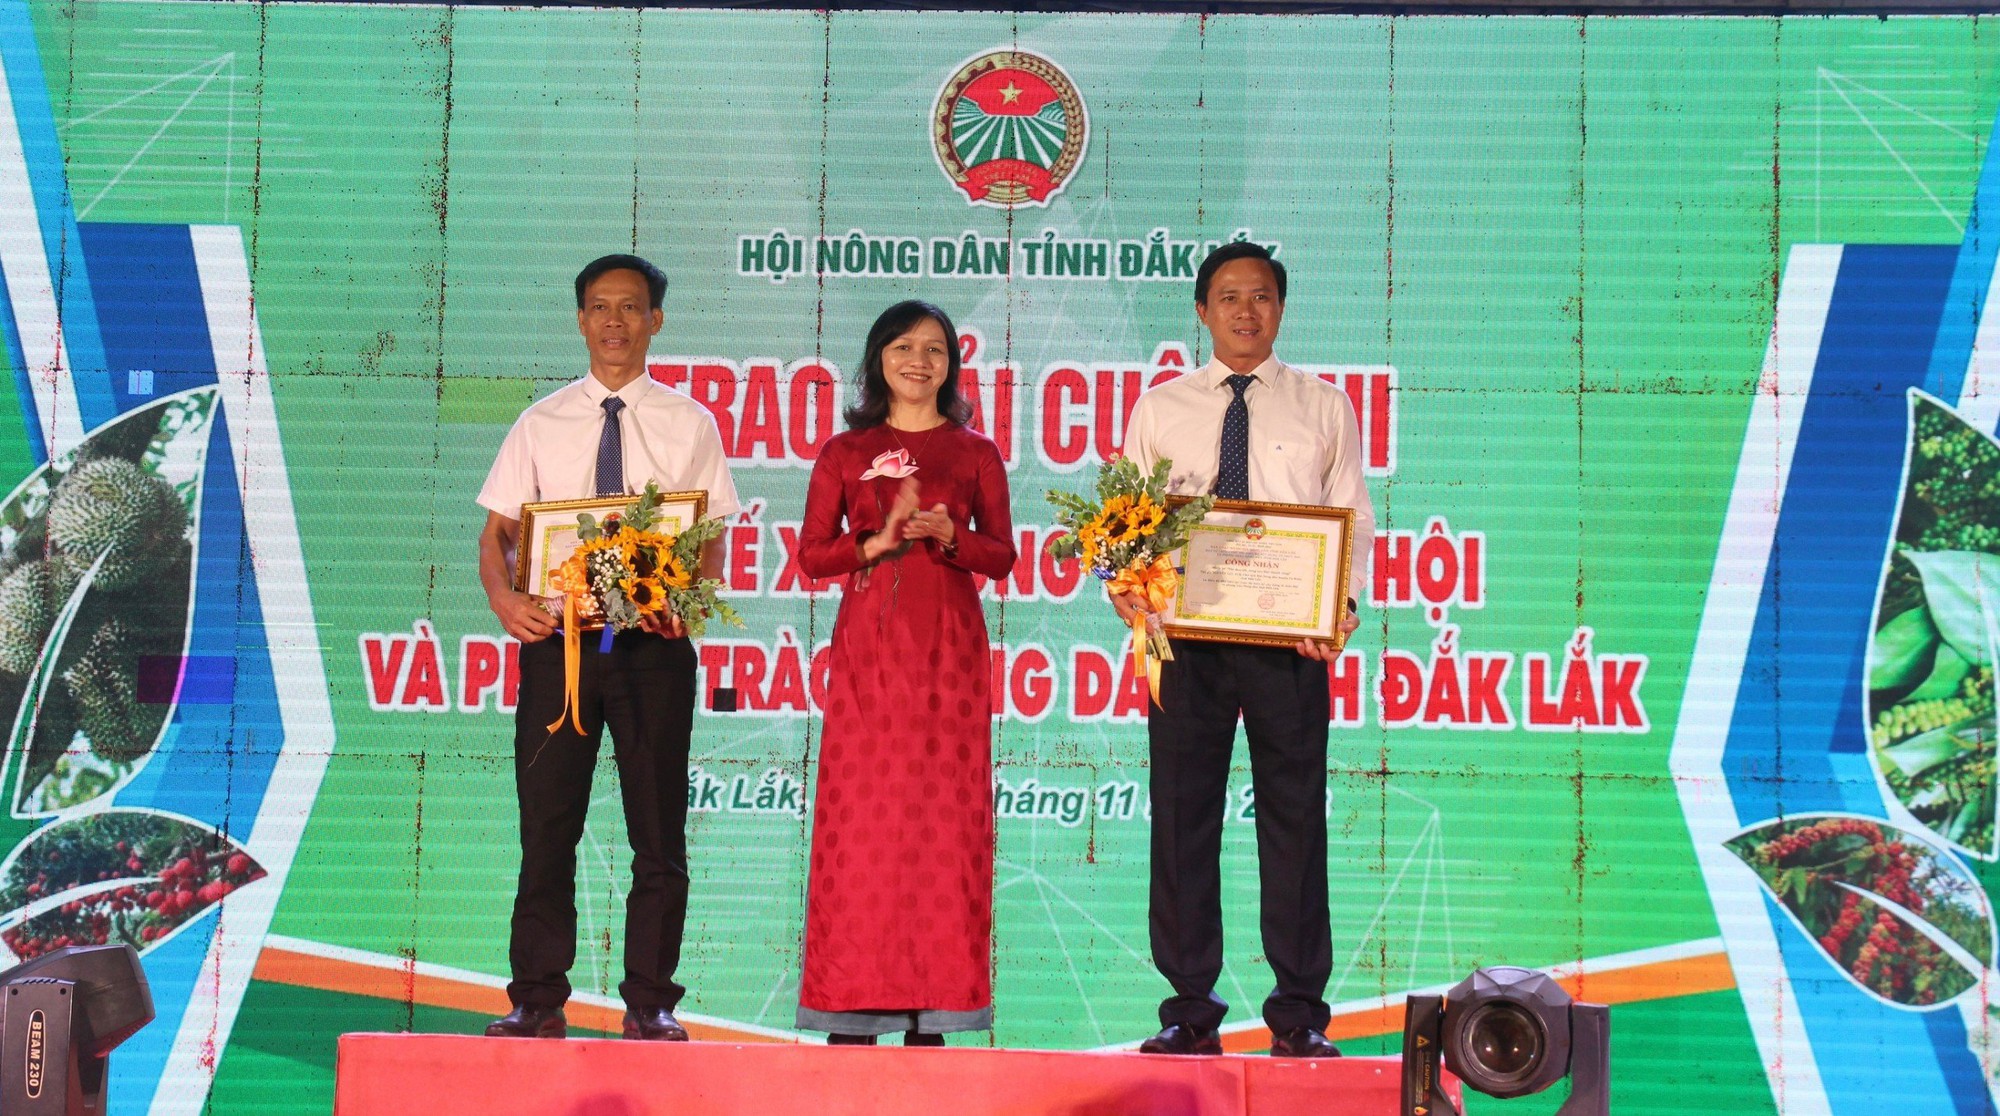 Nông dân Đắk Lắk tổ chức chuỗi sự kiện sôi nổi Kỷ niệm 120 năm Ngày thành lập tỉnh - Ảnh 3.